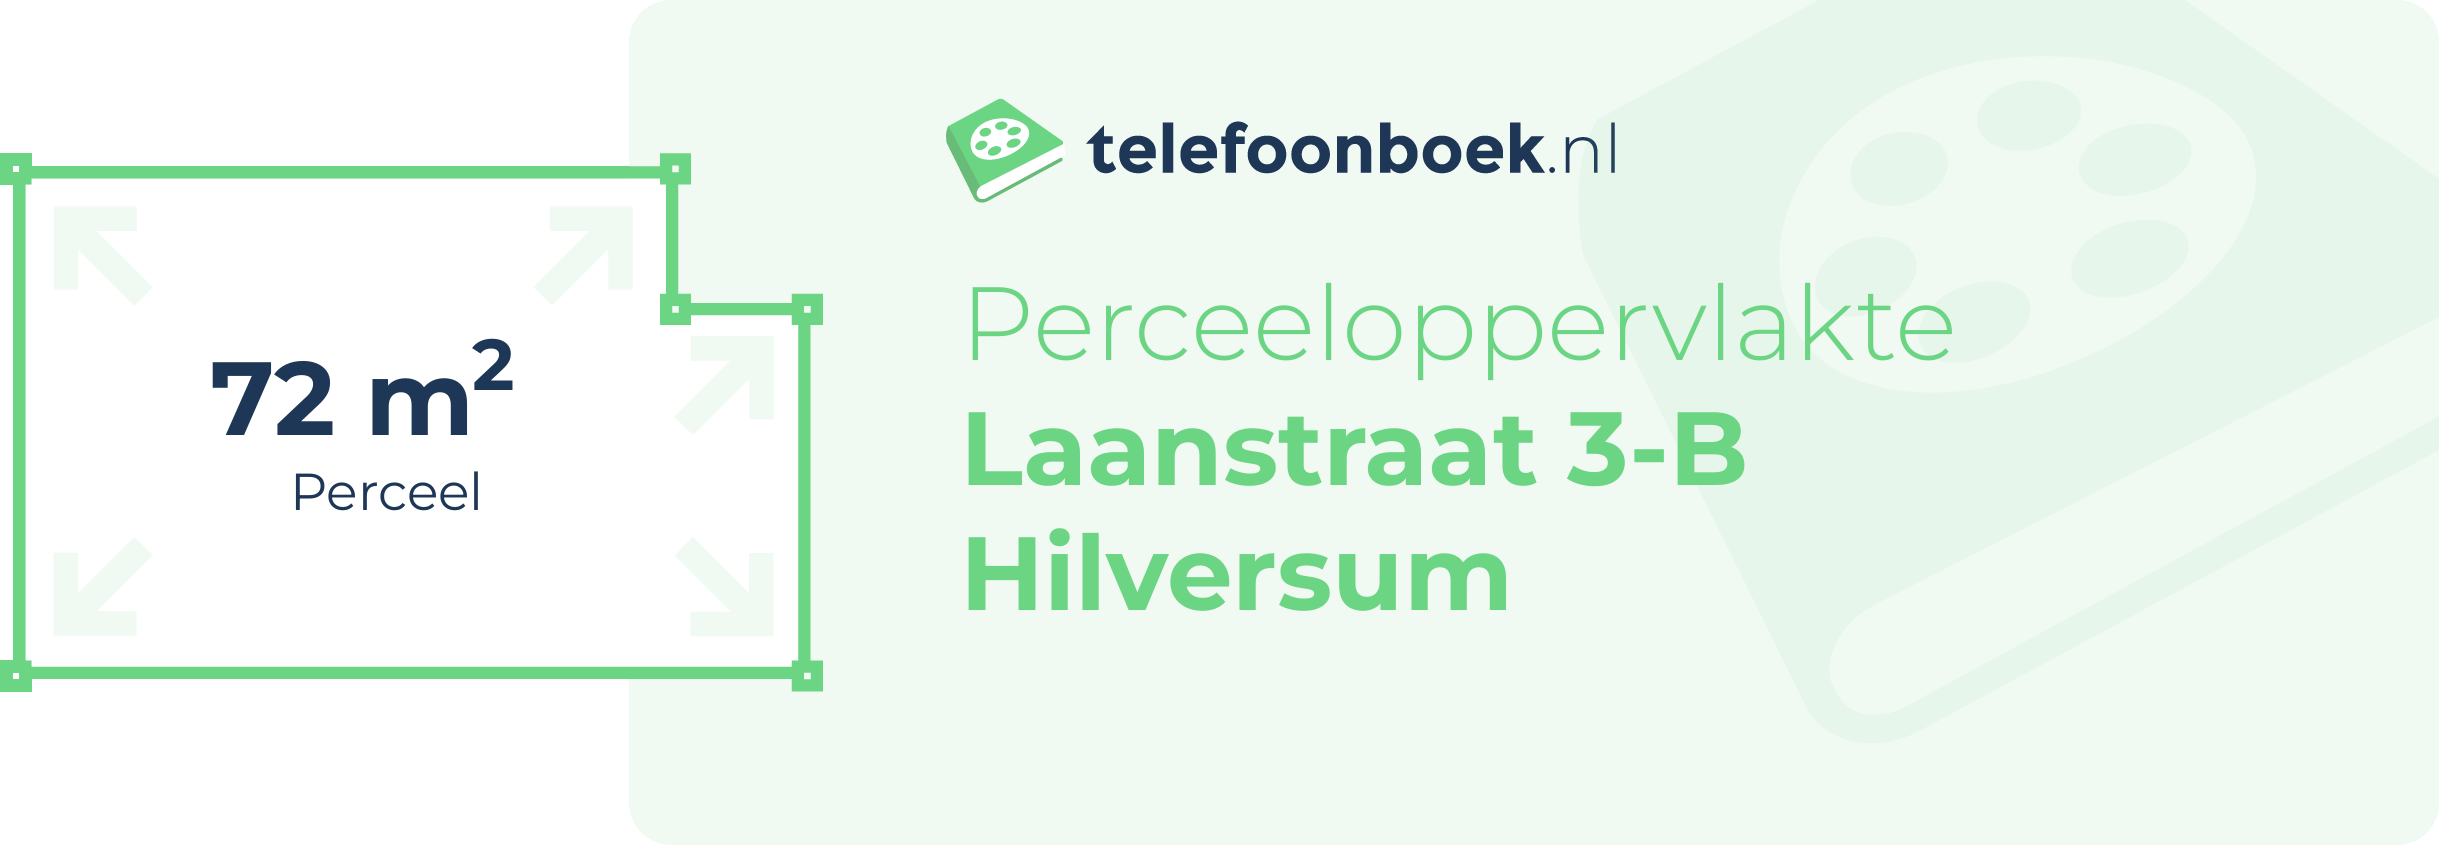 Perceeloppervlakte Laanstraat 3-B Hilversum